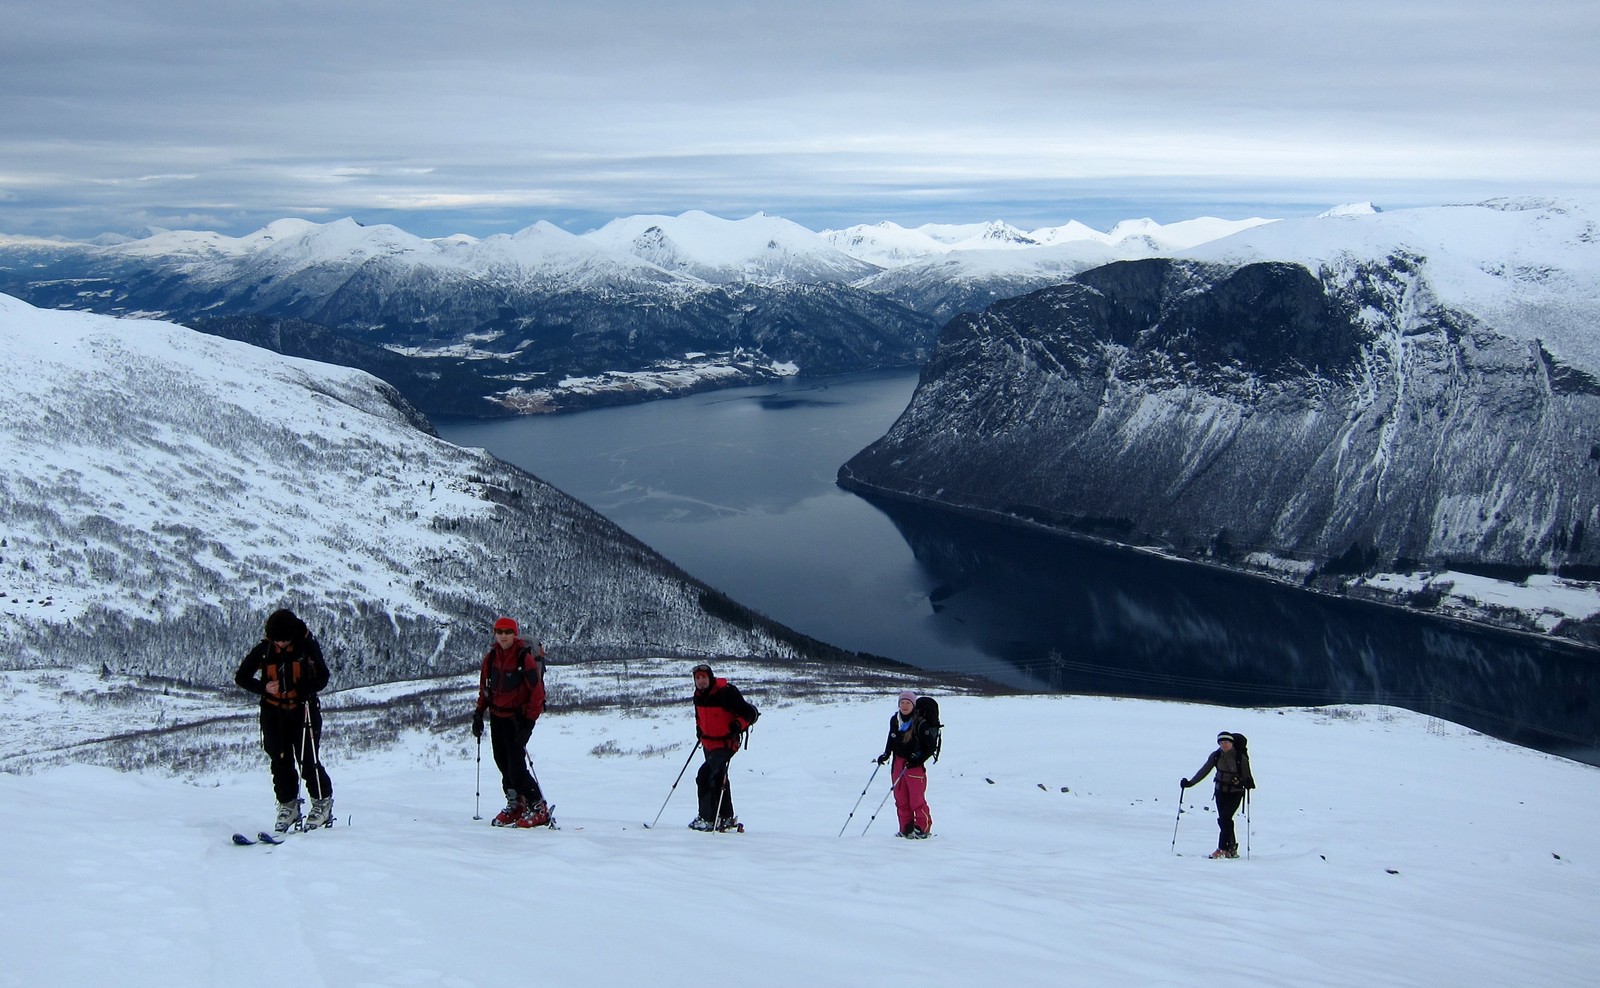 Норвегия средняя. Норвегия туризм. Туристический в Норвегии. Индустрия туризма в Норвегии. Норвегия тур по горам.